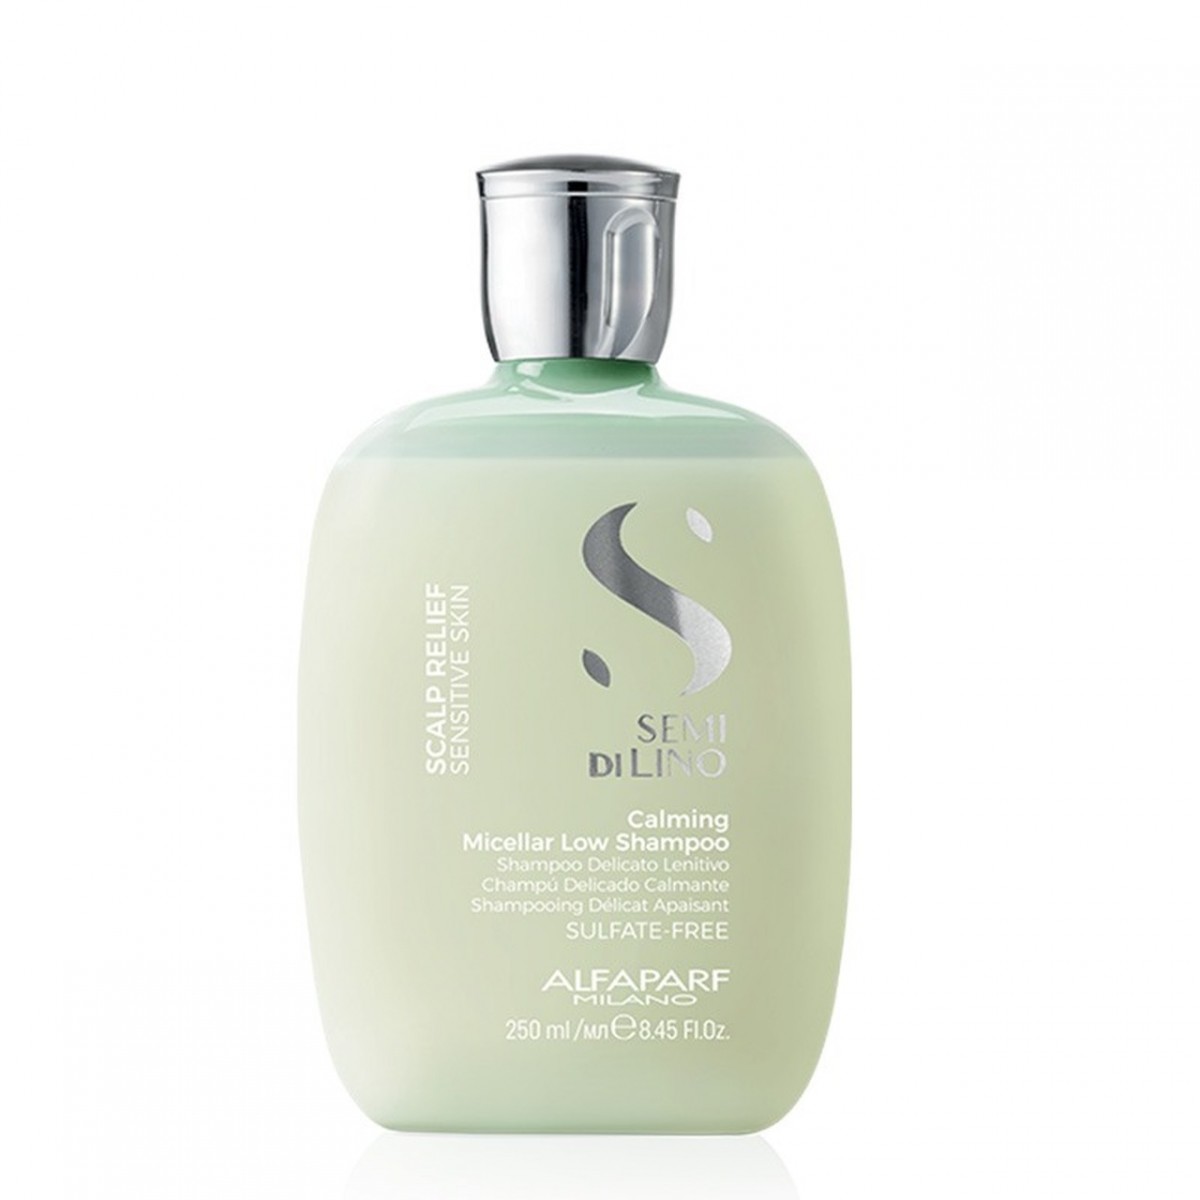 Alfaparf Milano Semi Di Lino Skalp Relief Calming Shampoo - Delikatny Niskopieniący Szampon Dla Skóry Wrażliwej o Działaniu Łagodzącym 250ml PF019477